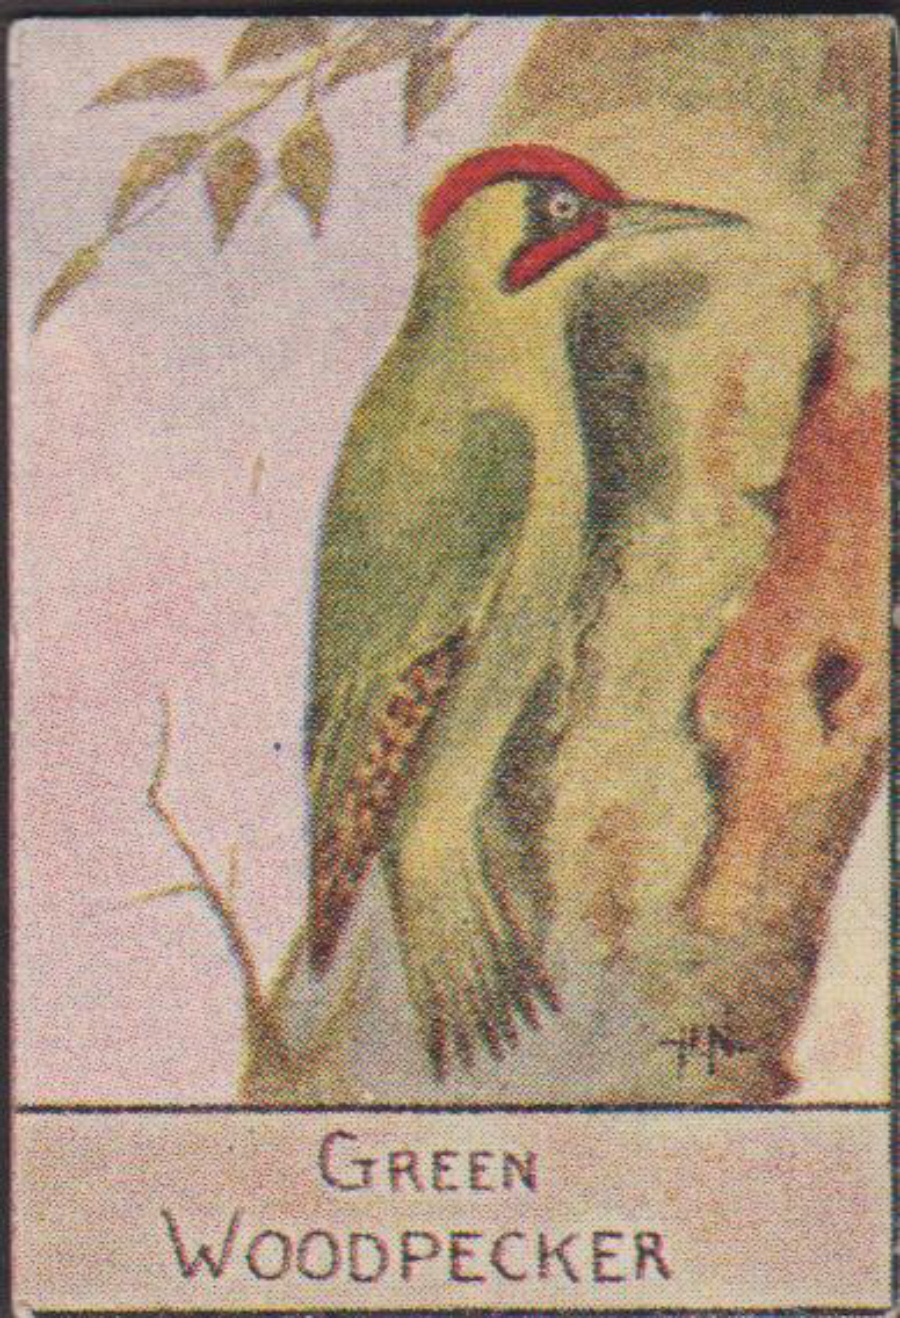 Spratt's British Bird Series Numbered No 69 Green Woodpecker